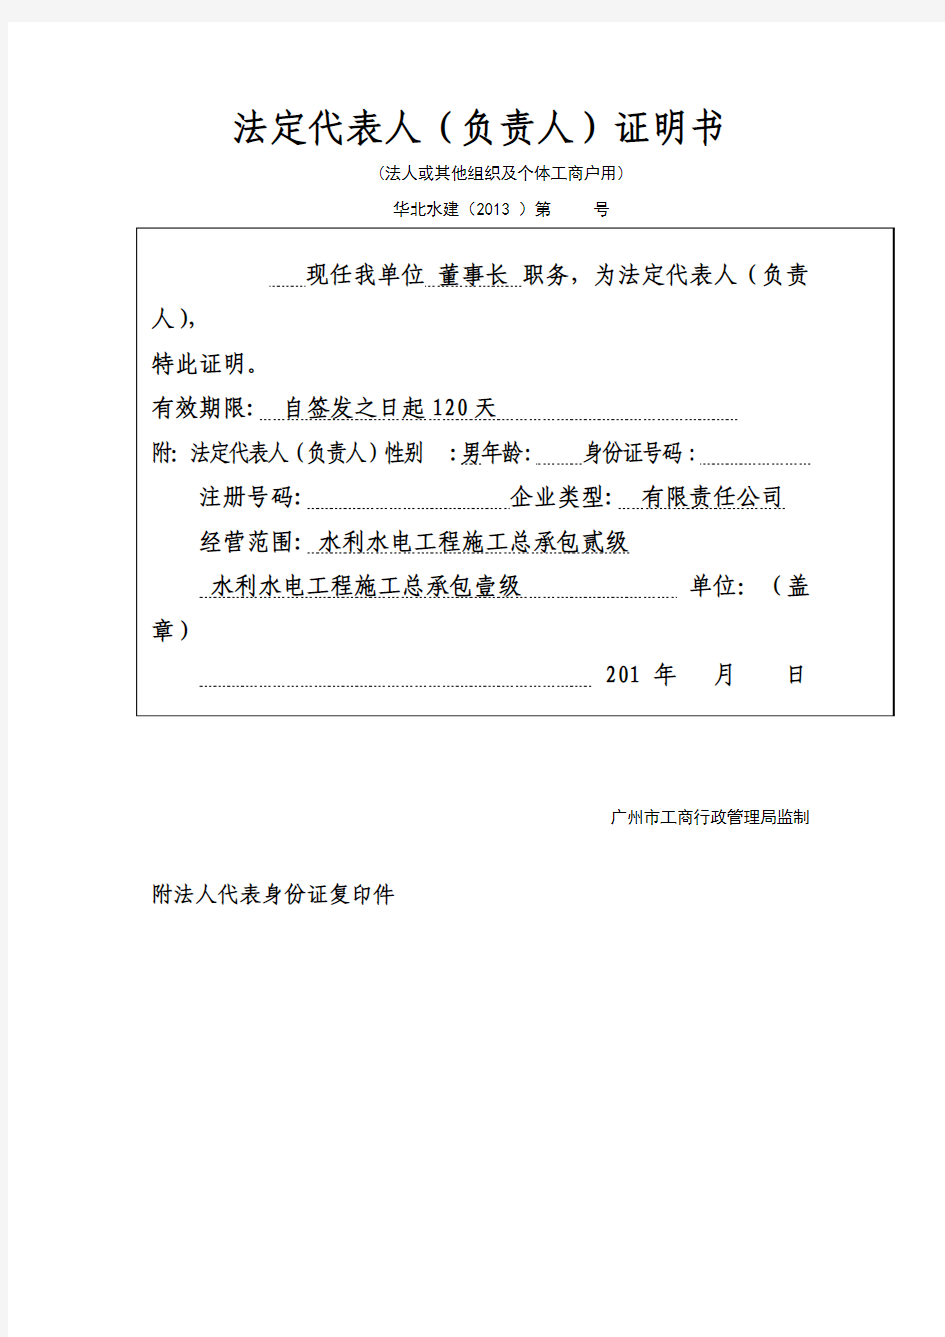 广州工商局格式法人证明书